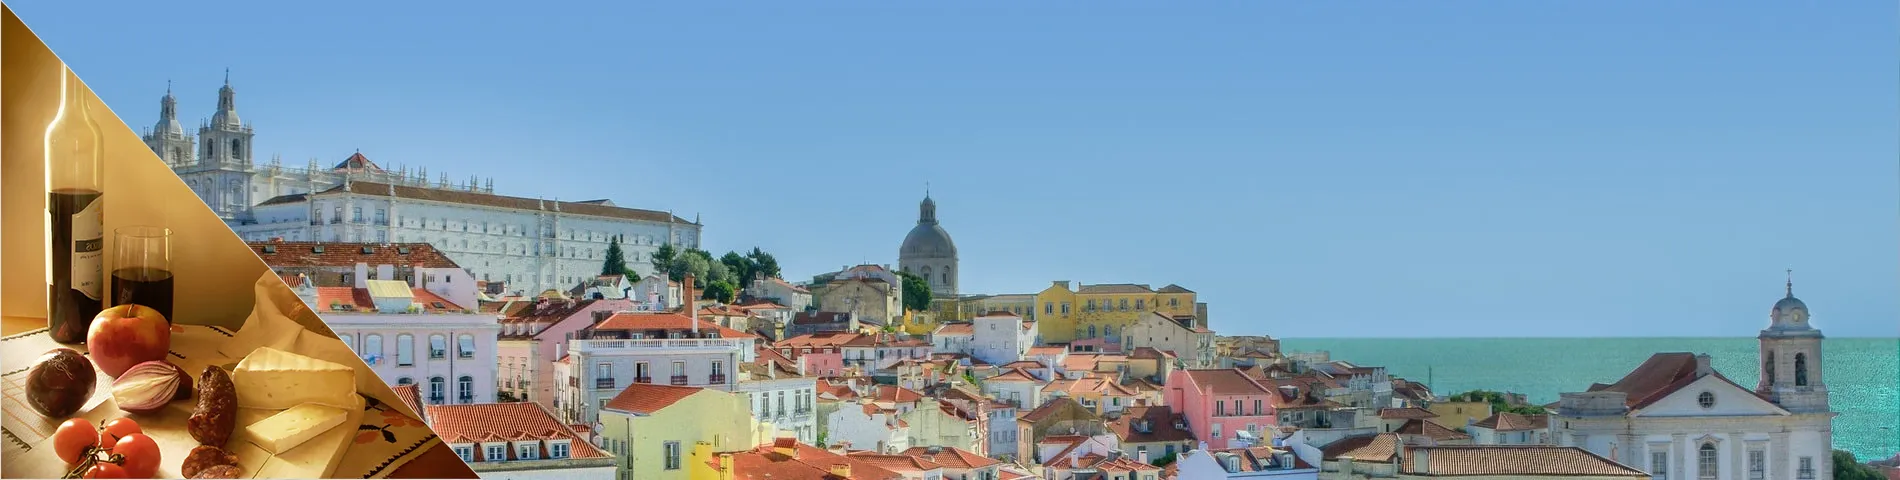 Lisboa - Portuguès i Cultura